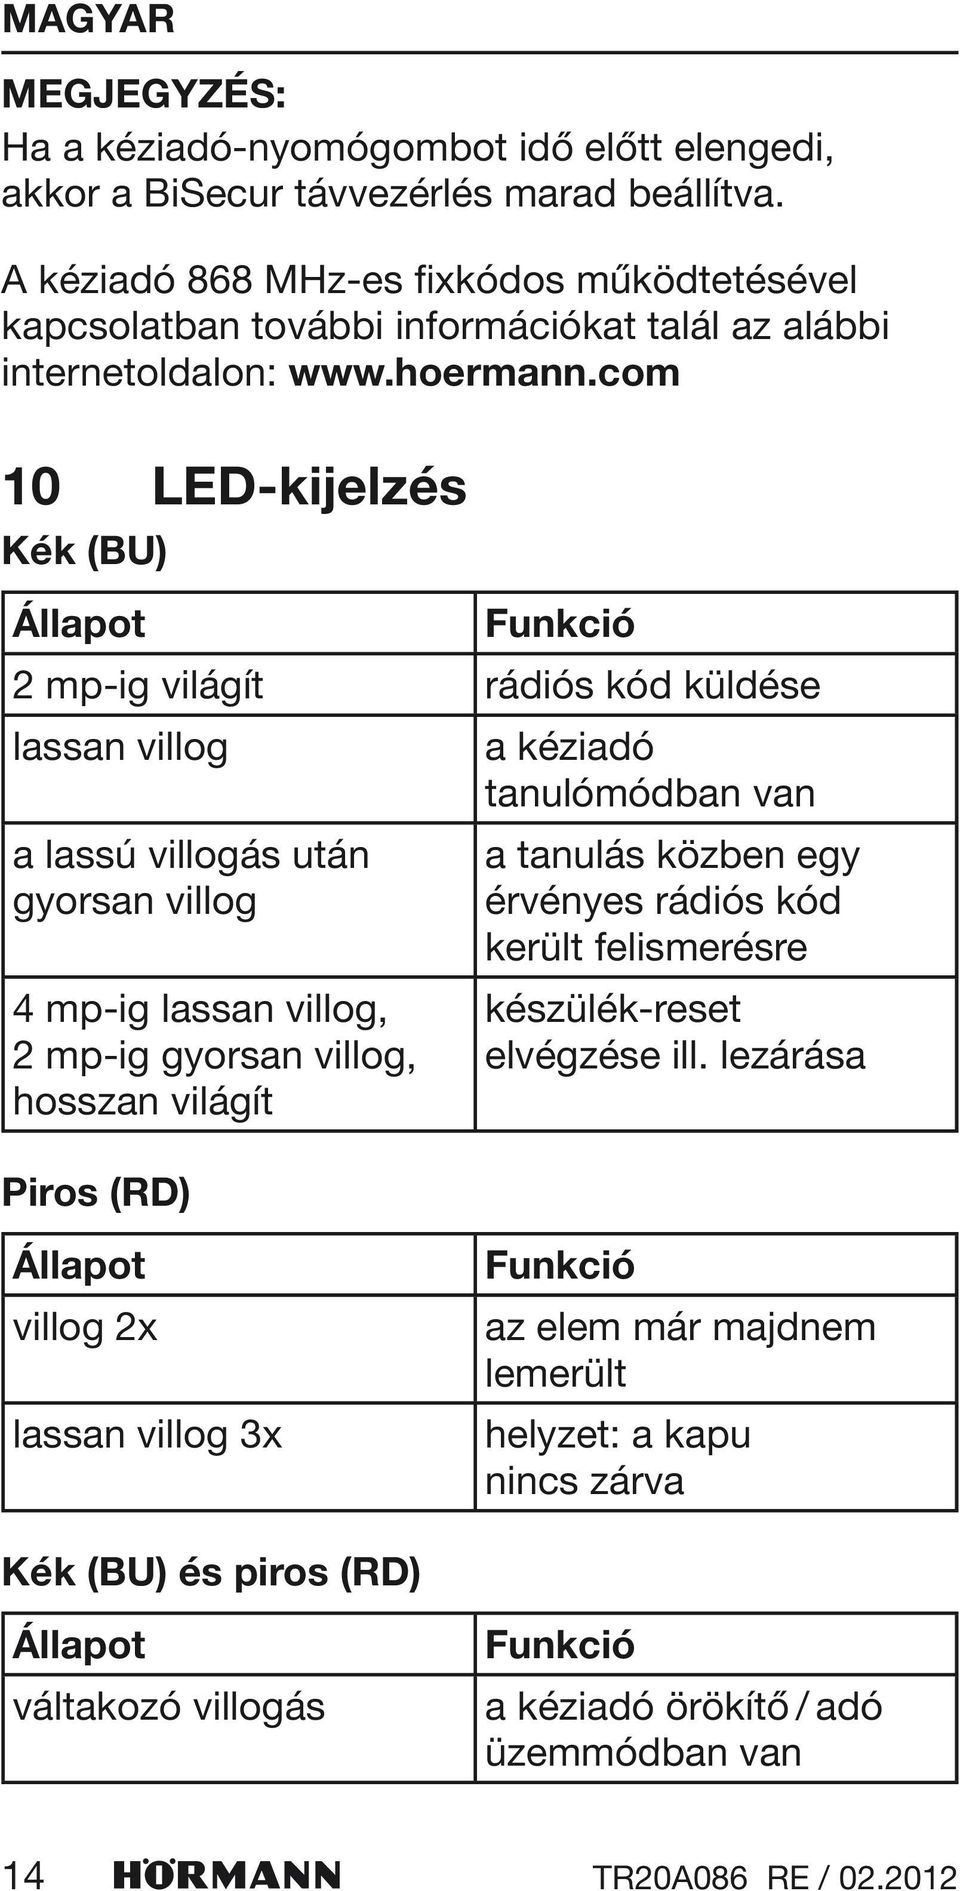 com 10 Kék (BU) Állapot LED-kijelzés Funkció 2 mp-ig világít rádiós kód küldése lassan villog a lassú villogás után gyorsan villog 4 mp-ig lassan villog, 2 mp-ig gyorsan villog, hosszan világít